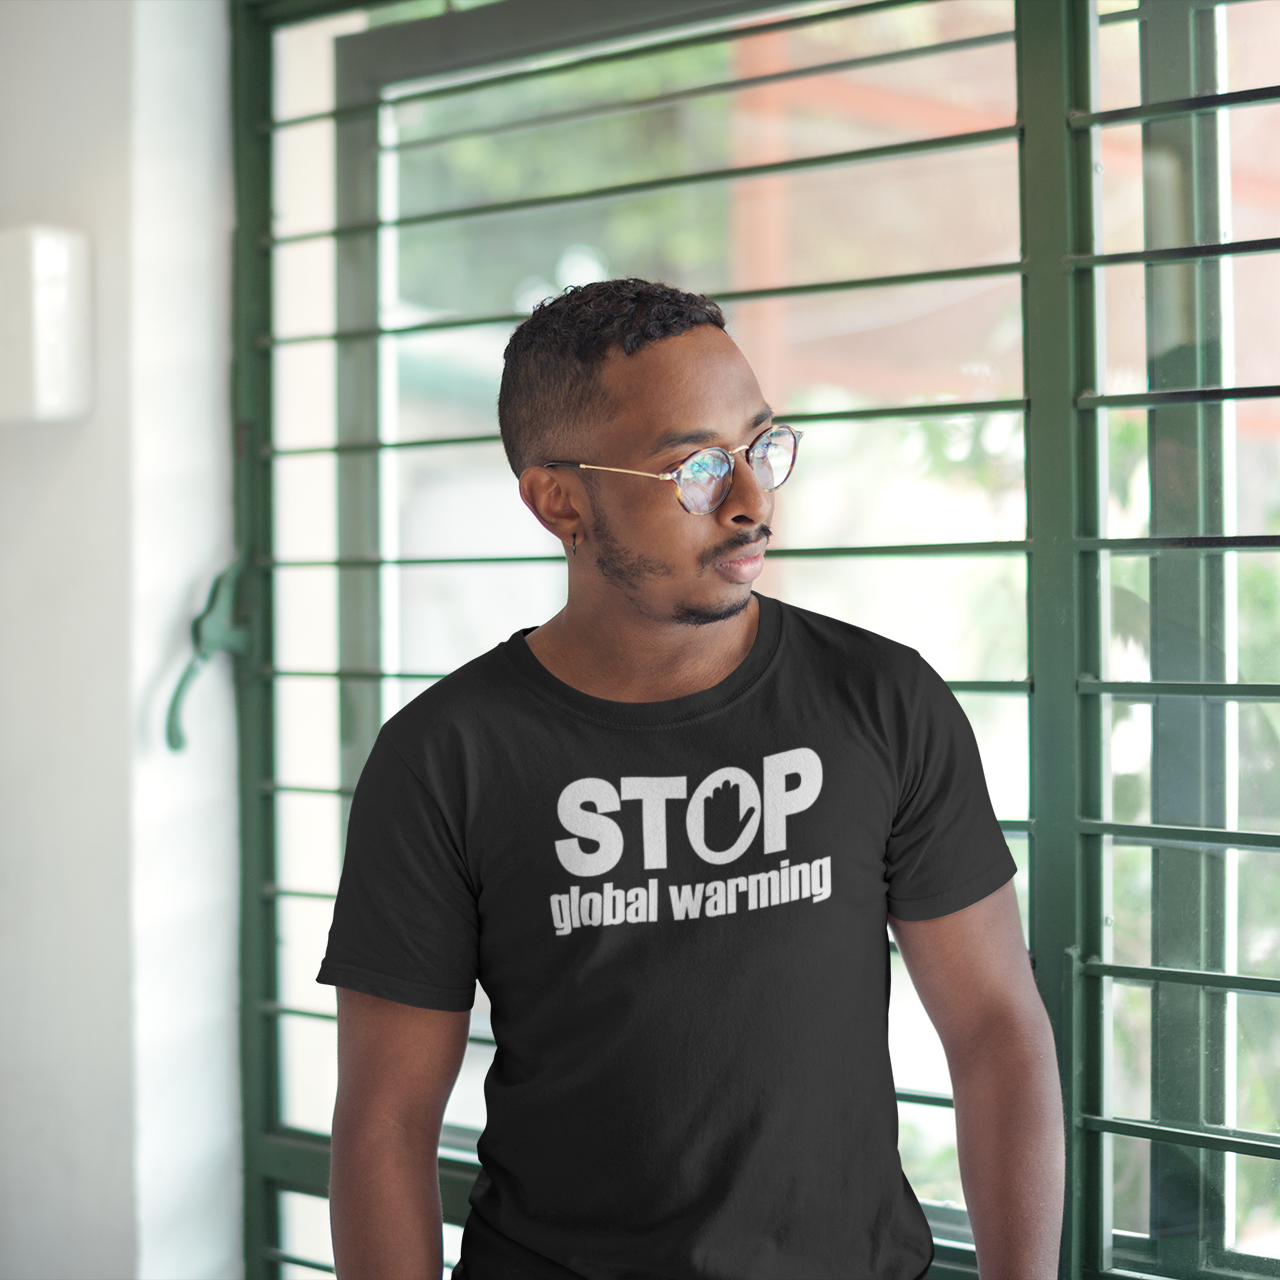 'Stop global warming' adult shirt